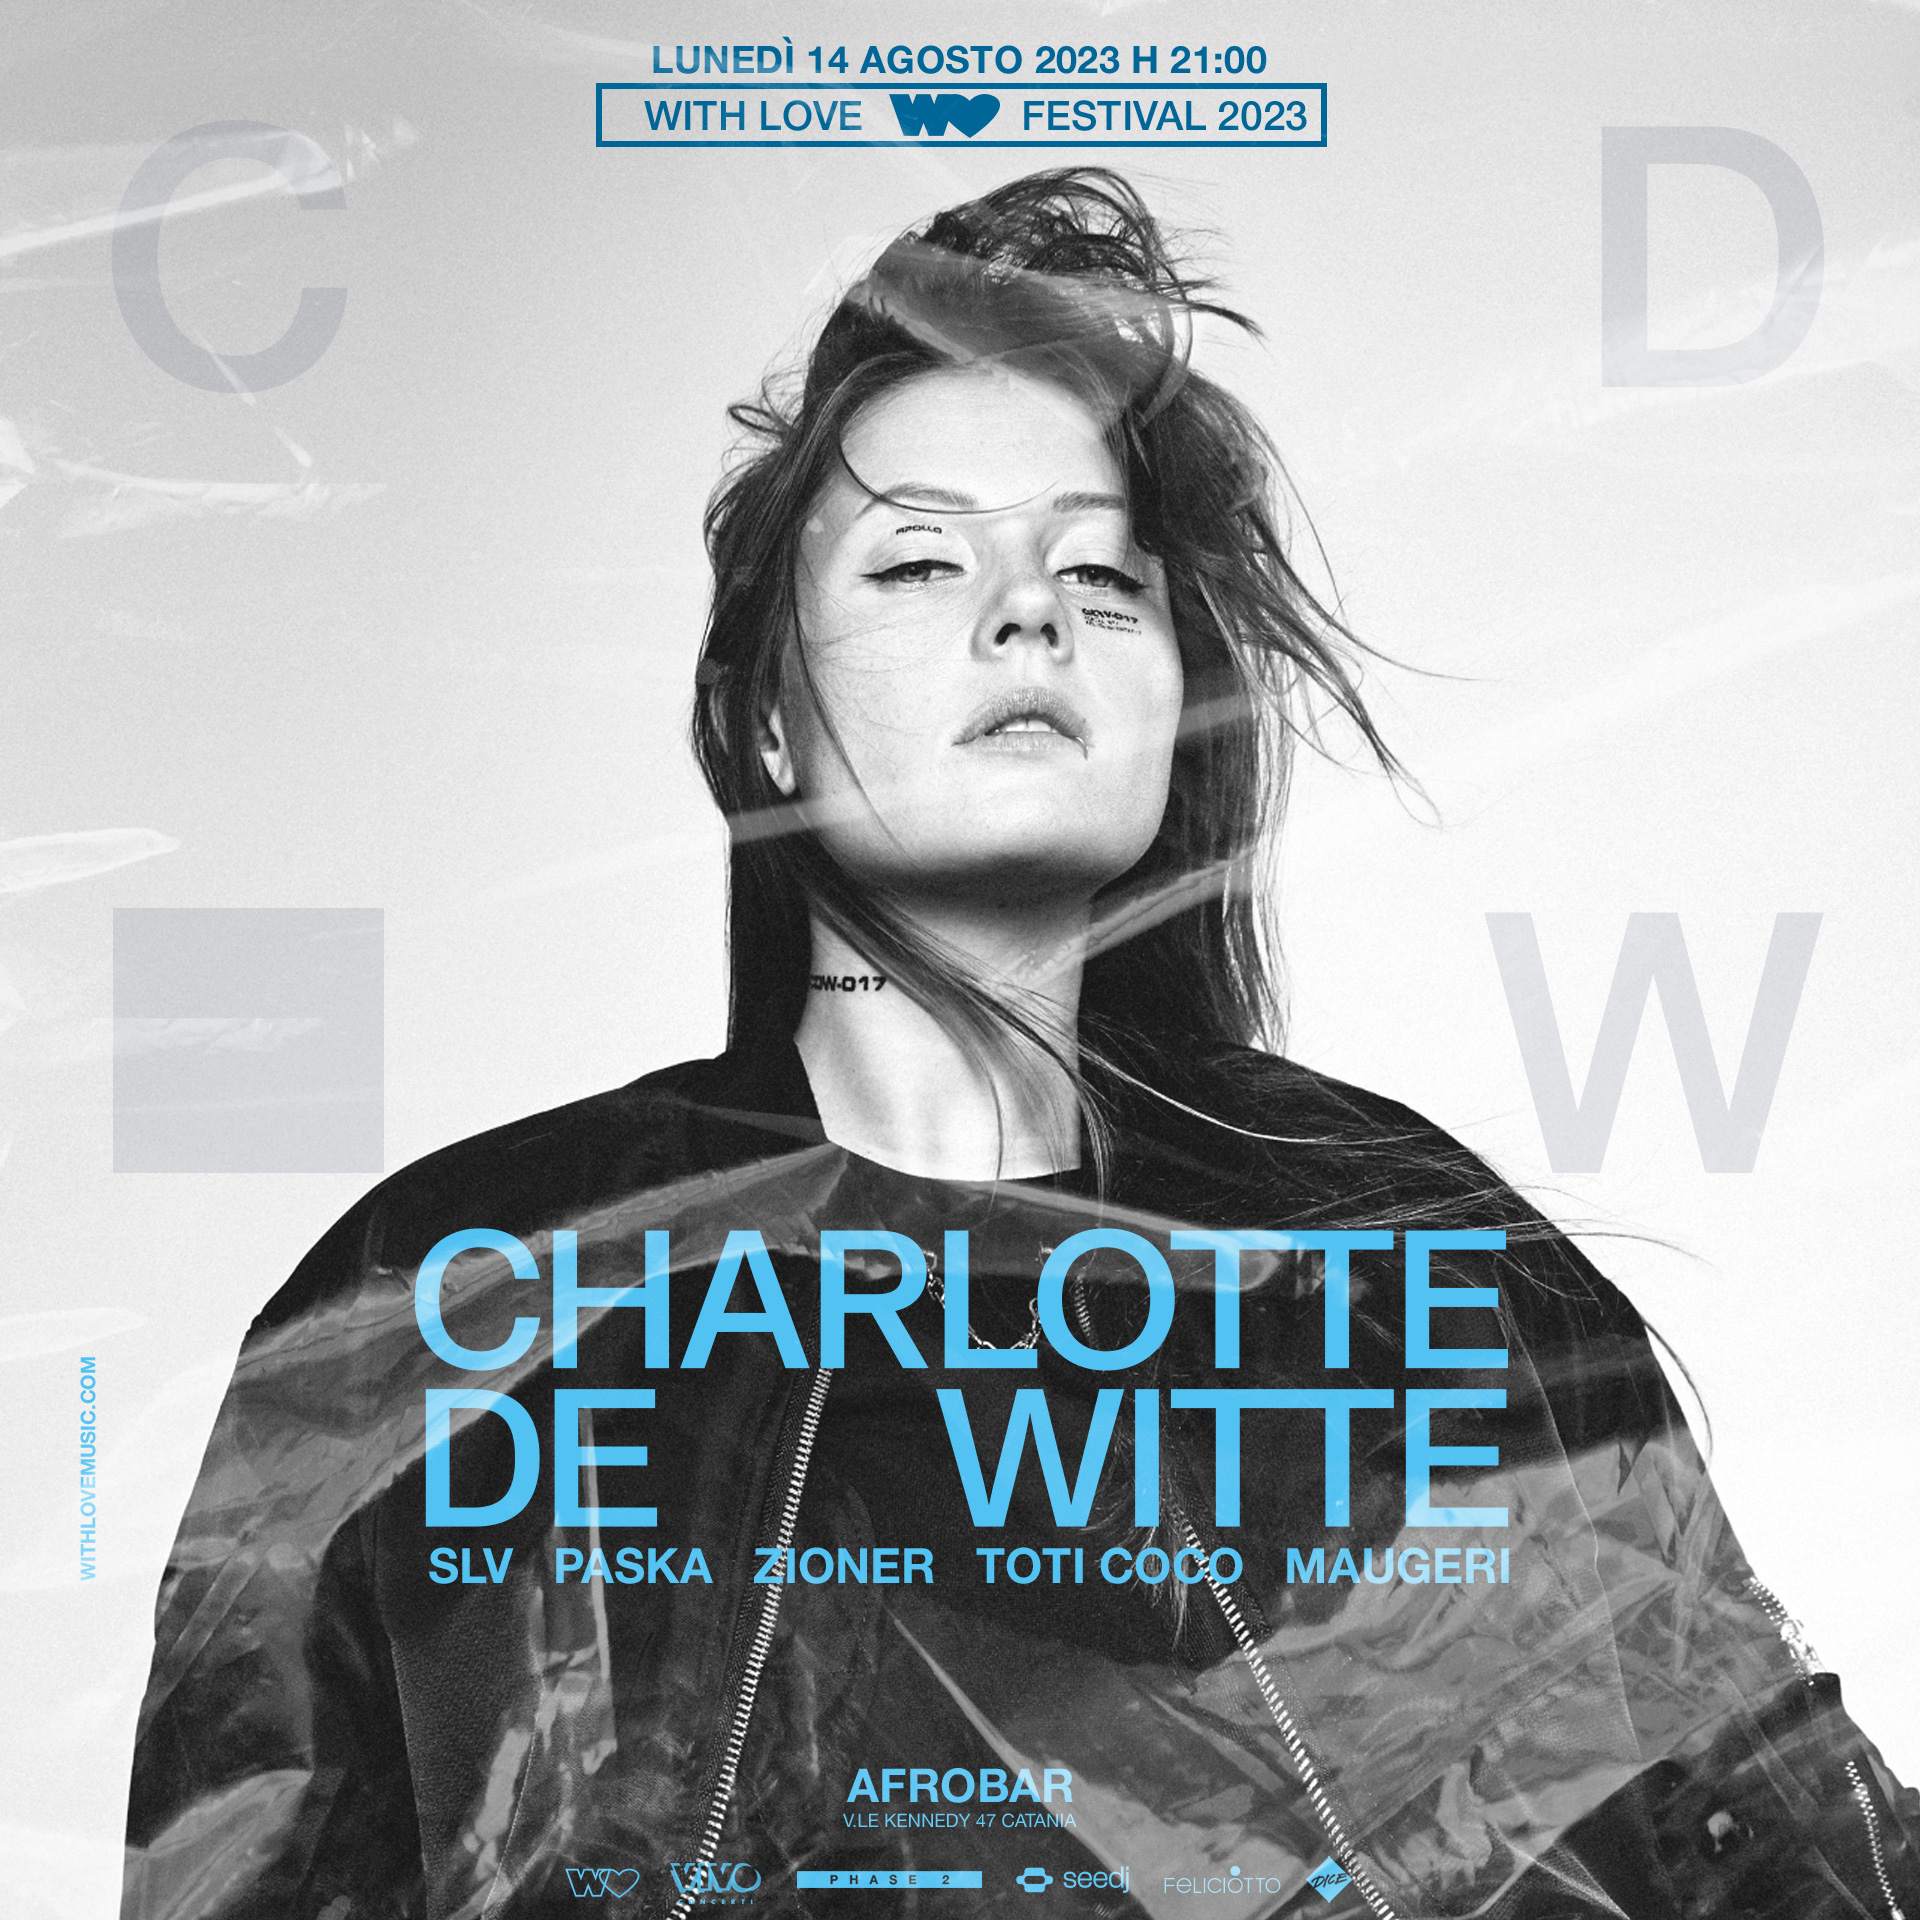 WITH LOVE Festival 2023 con Charlotte de Witte - フライヤー表